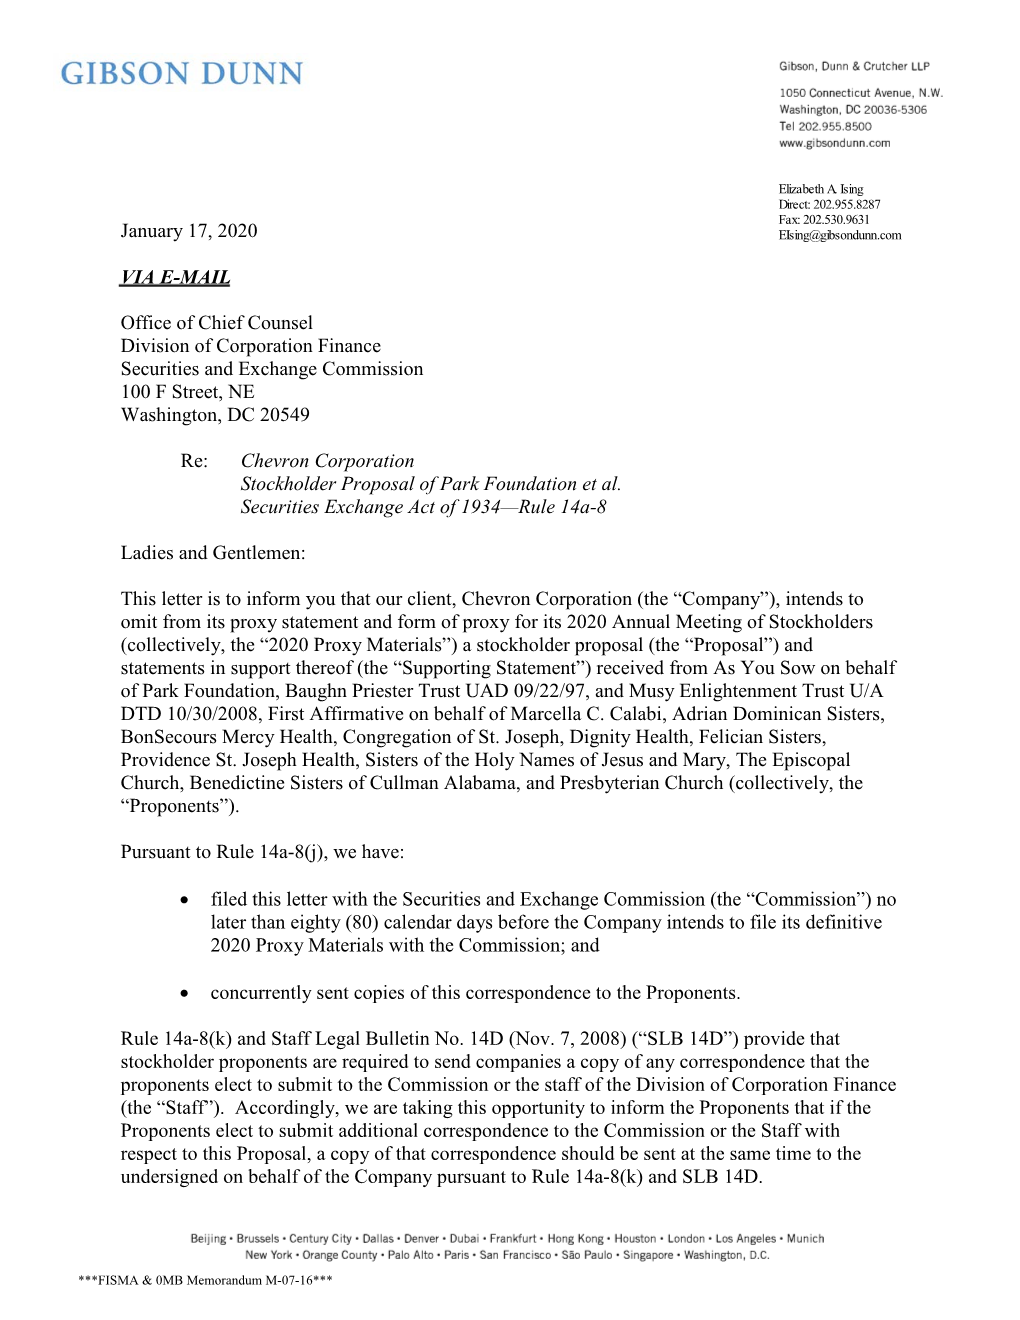 Chevron Corporation; Rule 14A-8 No-Action Letter